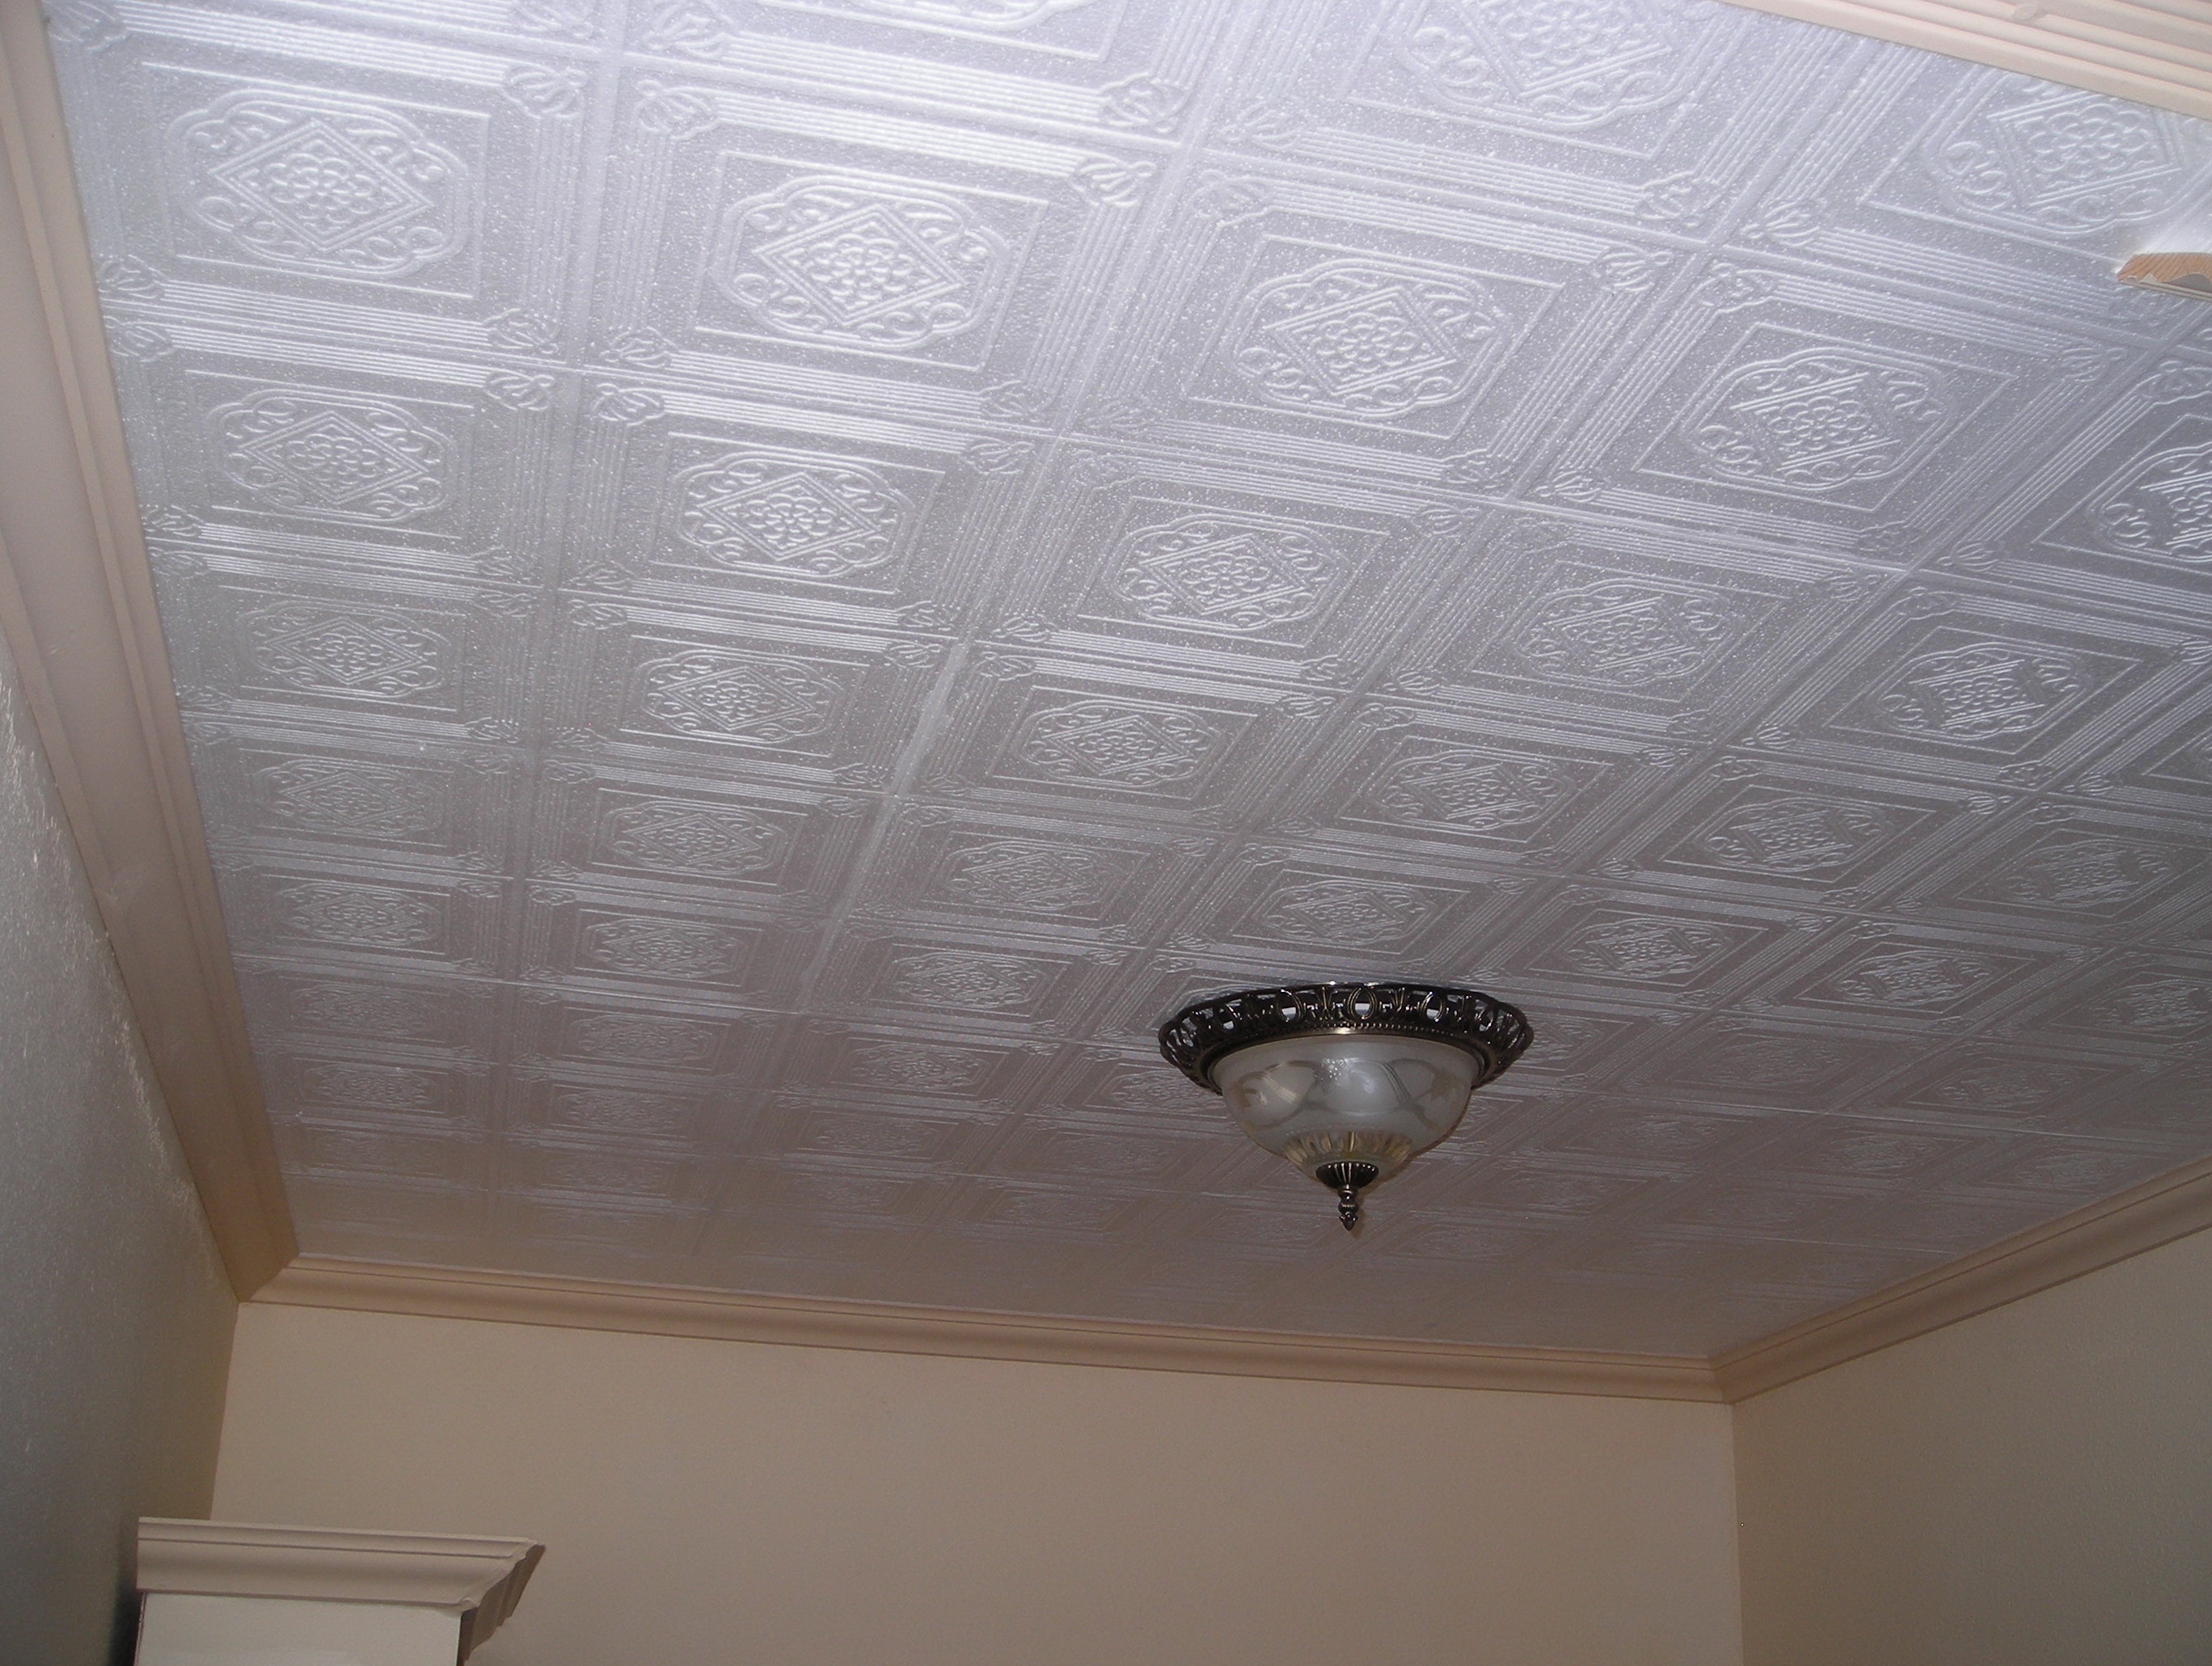 Polystyrene Ceiling Tiles Fire Hazardpolystyrene ceiling tiles fire hazard home design ideas